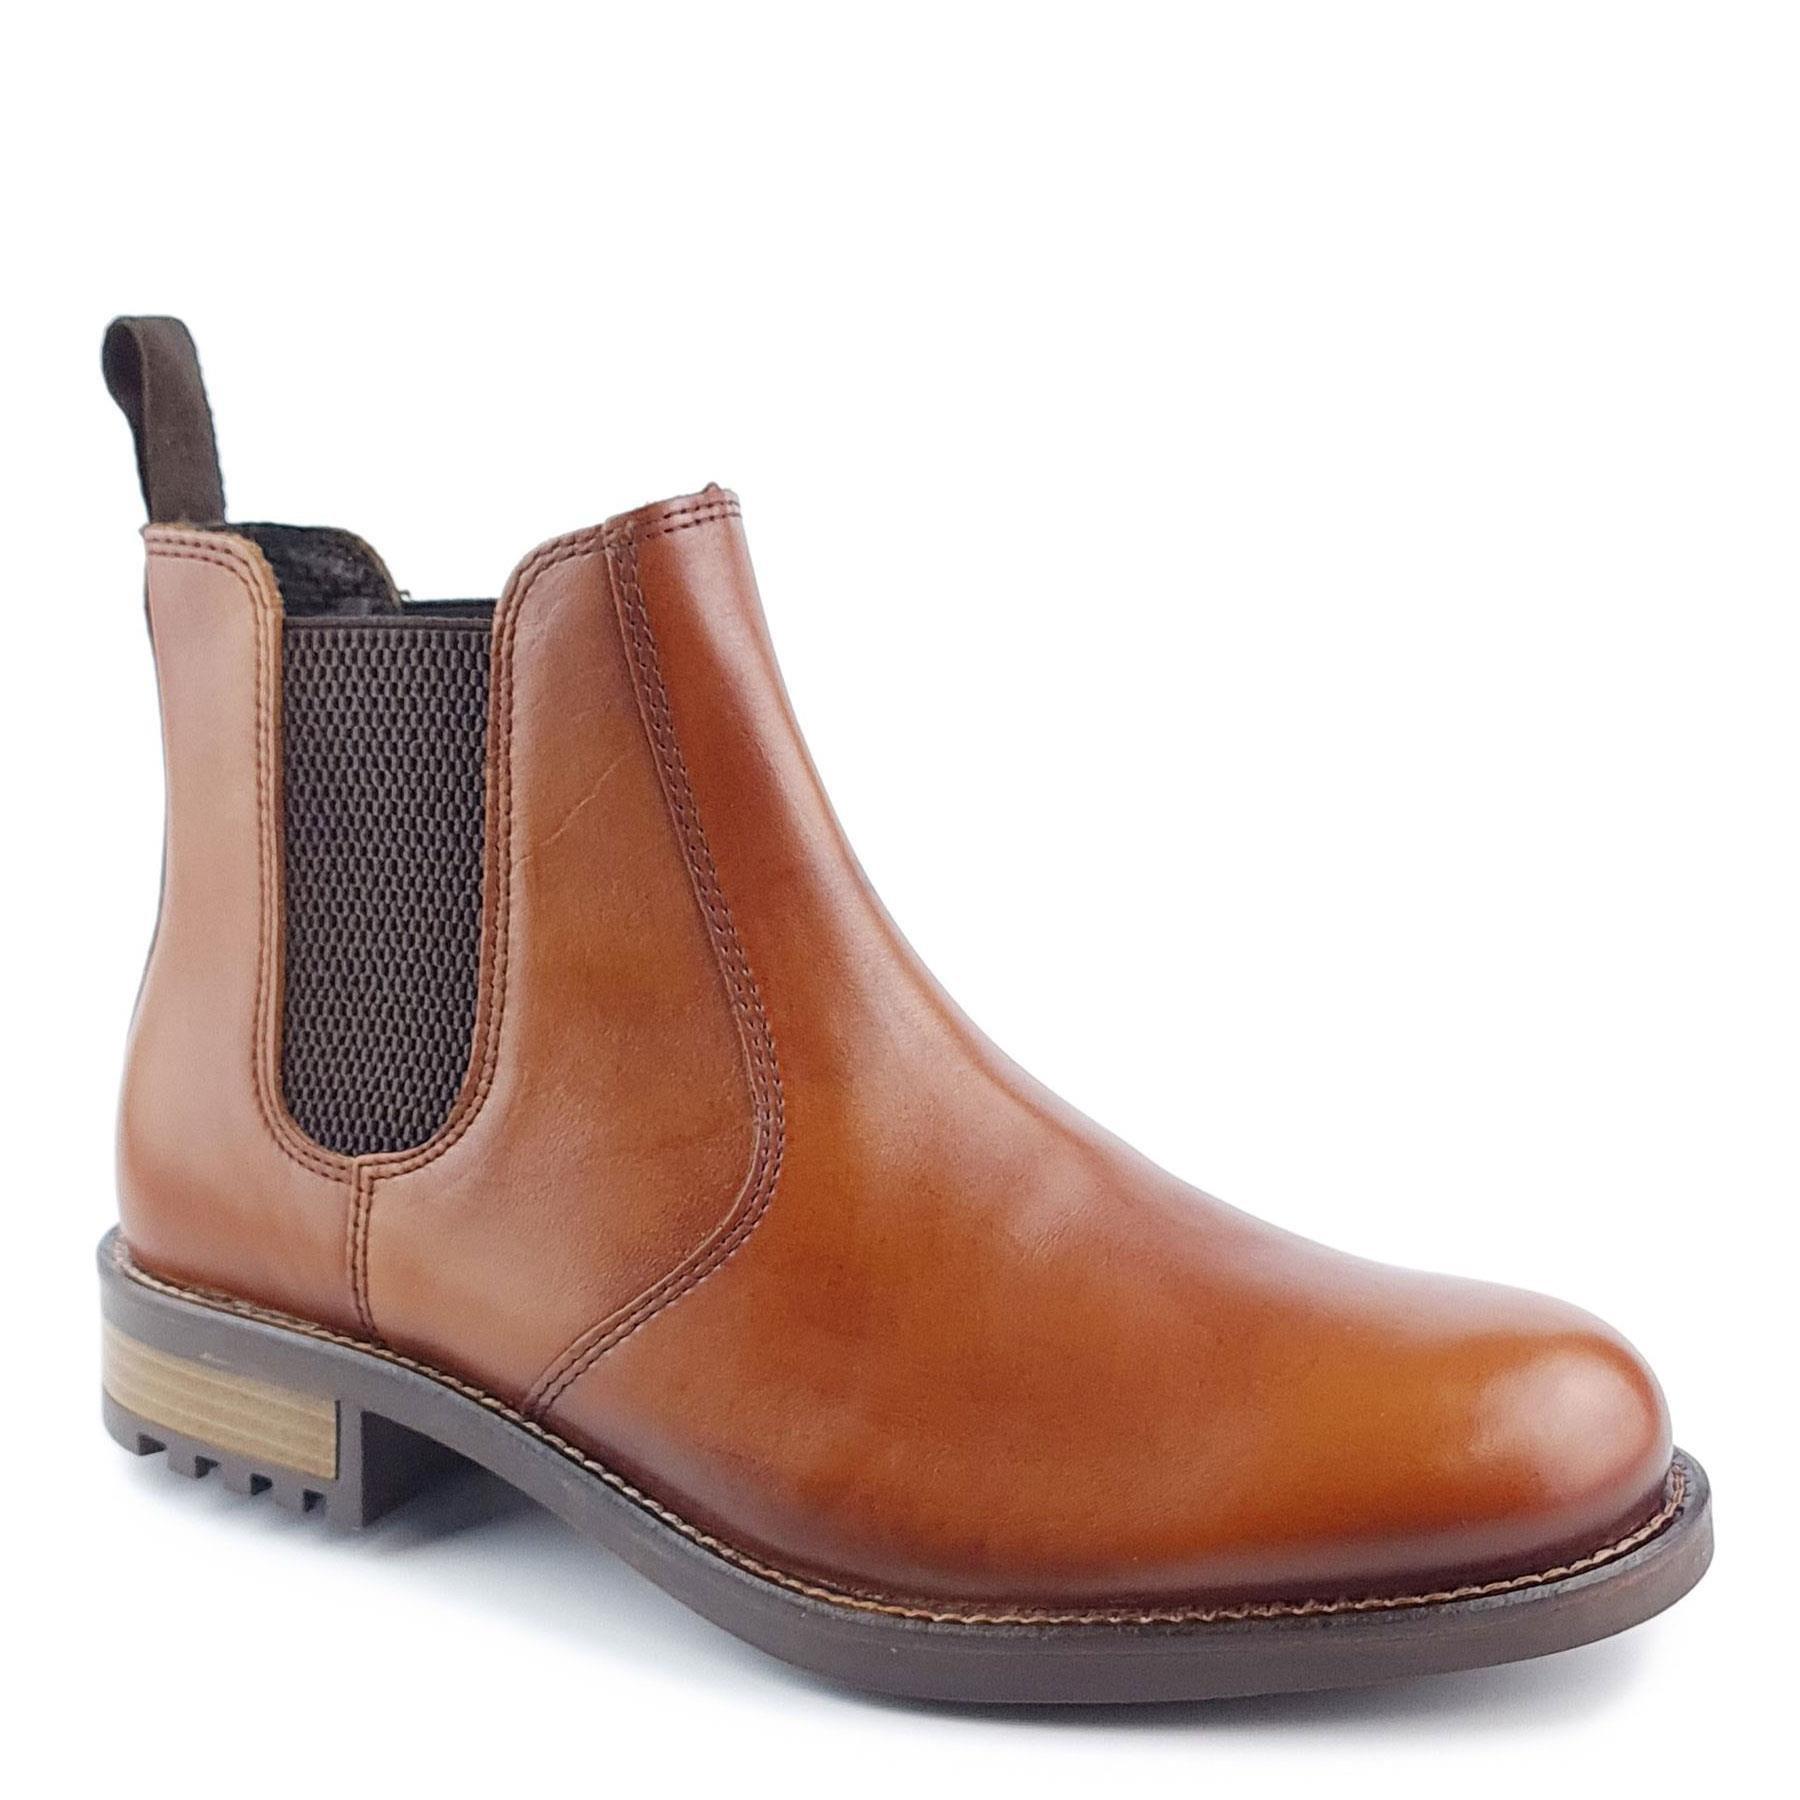 Кожаные ботинки челси Loddington Frank James, коричневый ботинки мужские wrangler boogie mid fur s wm22100 030 зимние коричневые 41